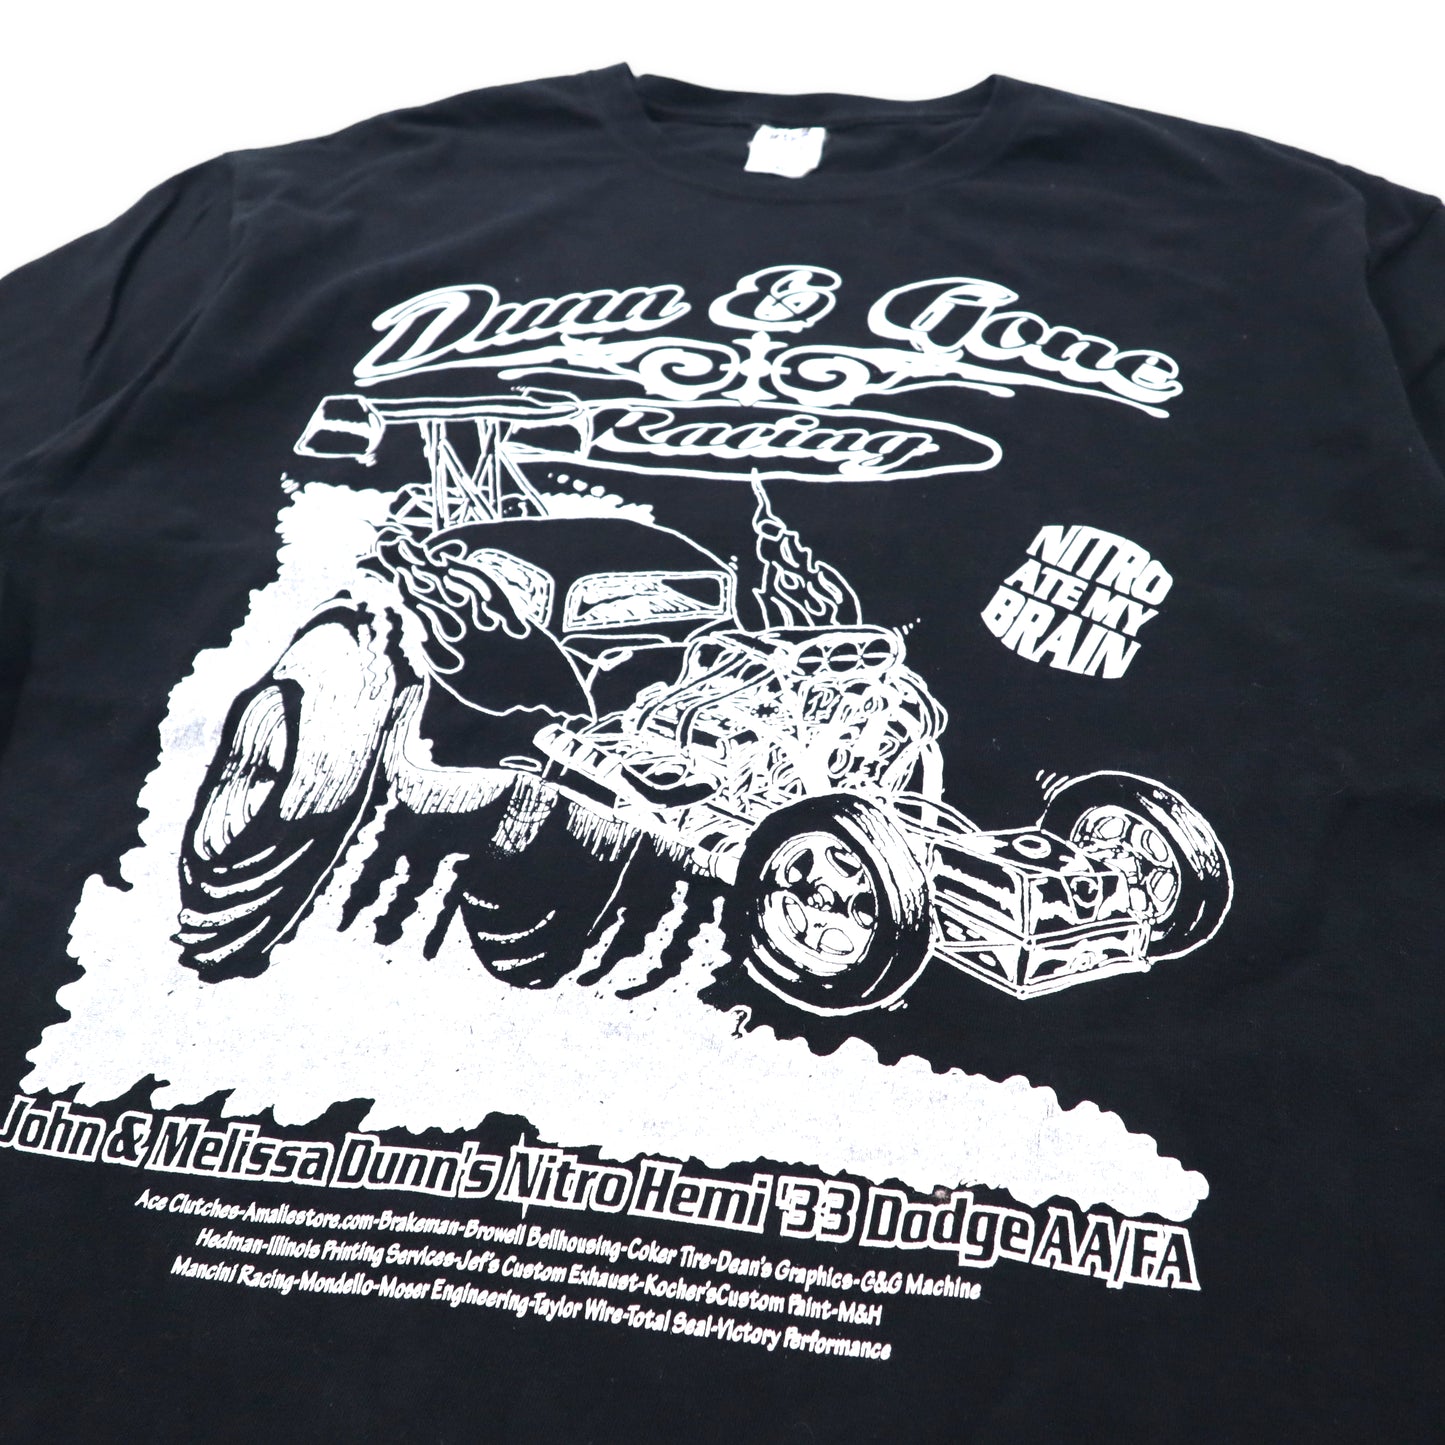 anvil レーシングカー 両面プリント Tシャツ XL ブラック コットン Dunn & Gone Racing ビッグサイズ